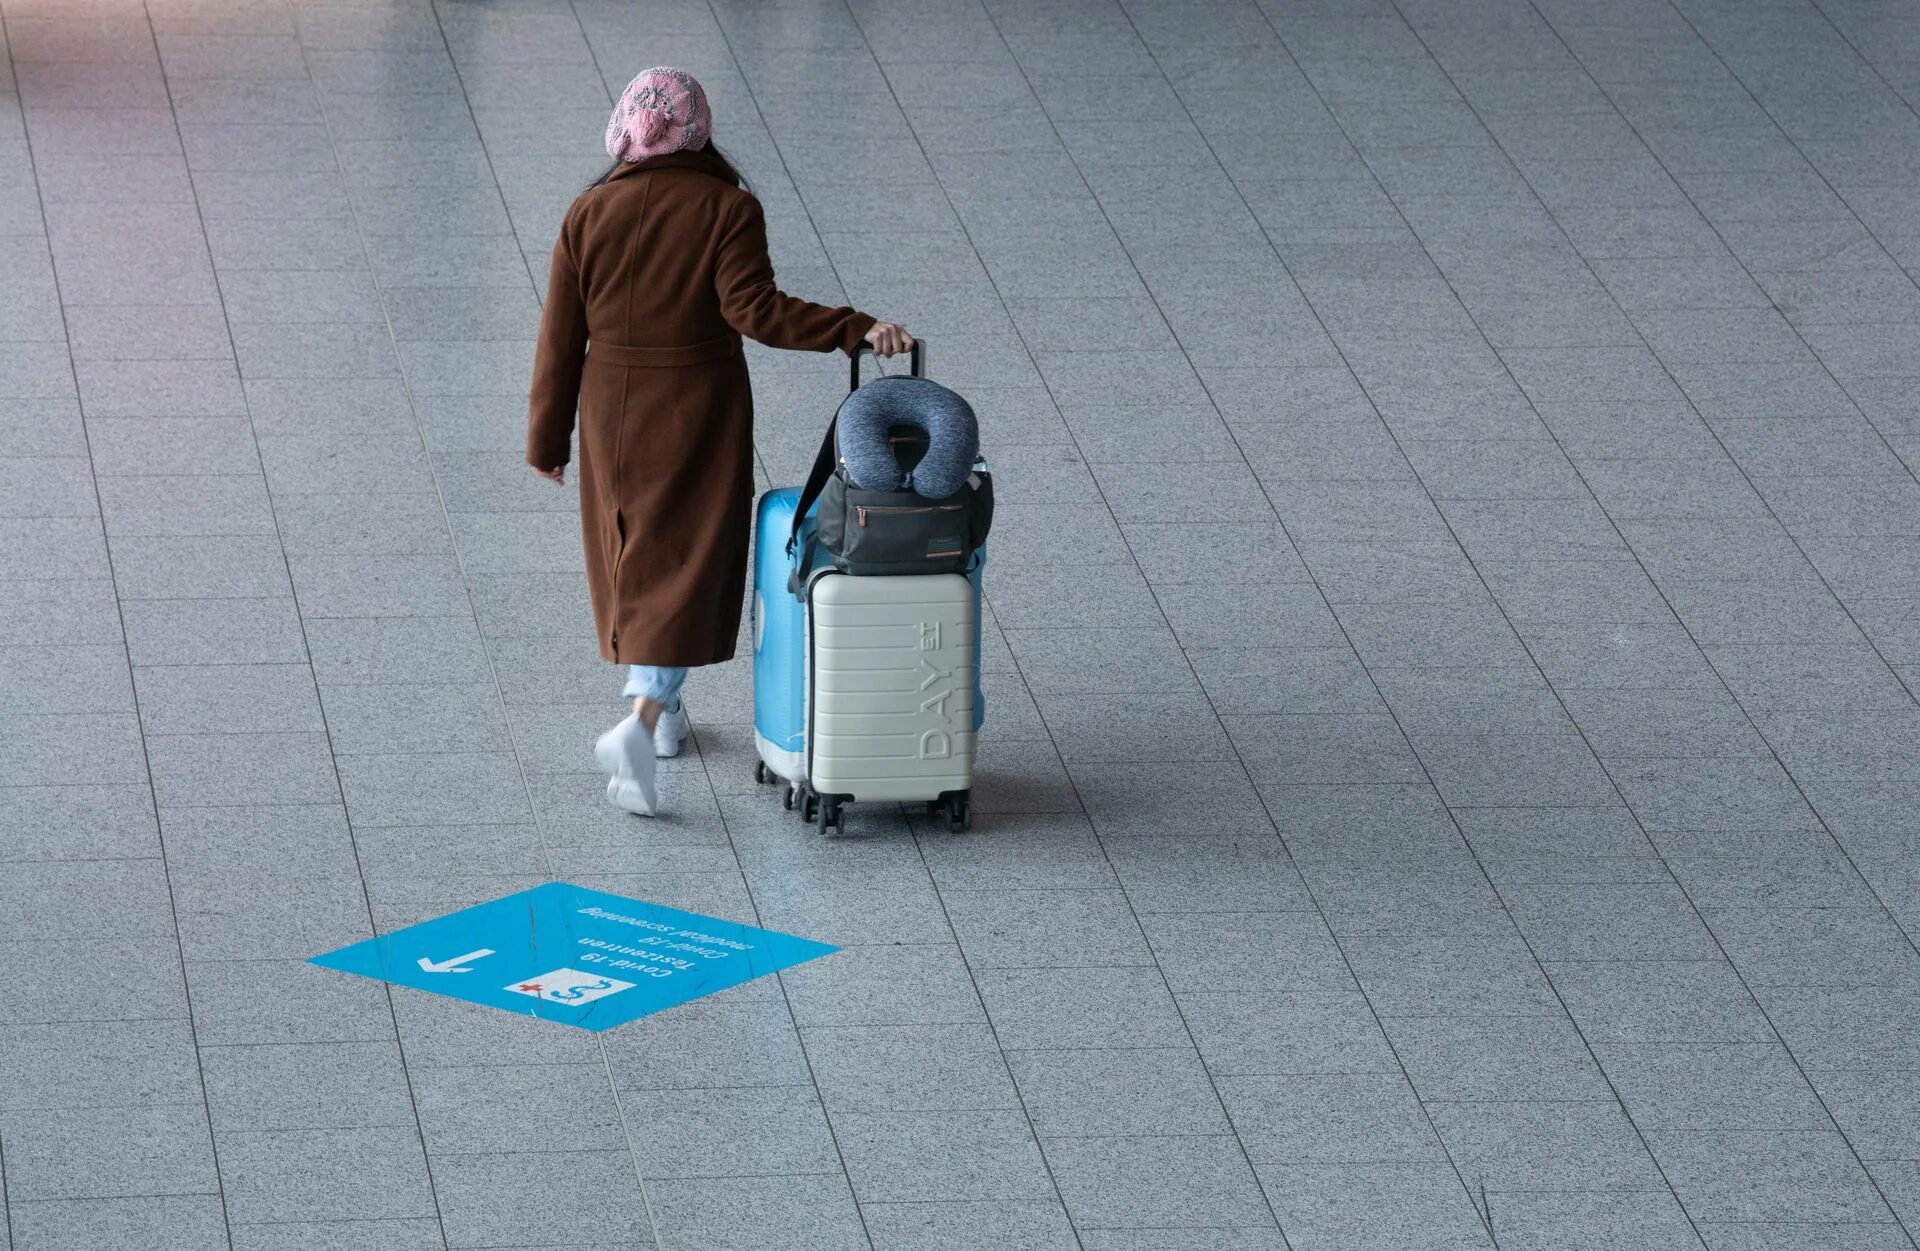 Спрятать от сотрудника аэропорта. Злая женщина в аэропорту. Причина задержки чемодана в аэропорту. Трое женщин строжайший запрет килограмм